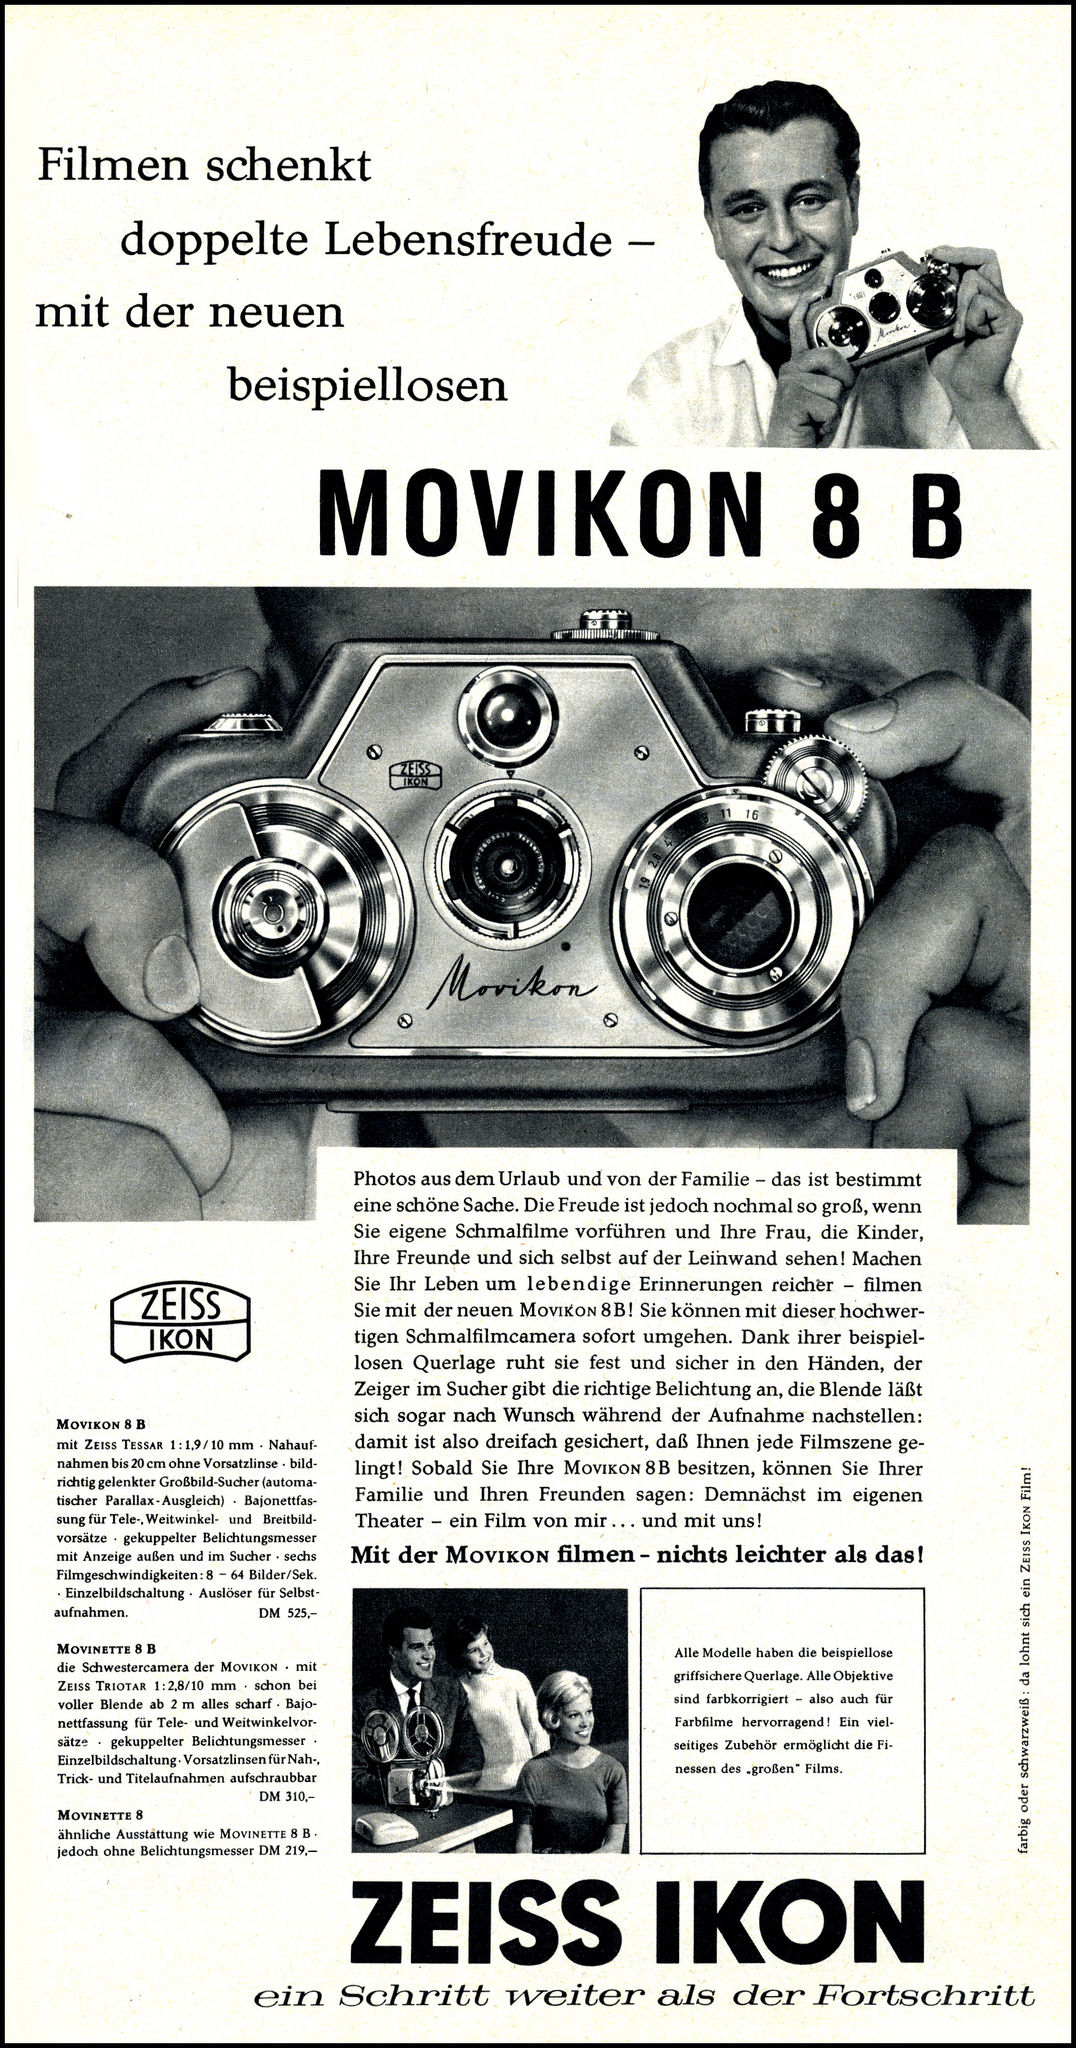 ZEISS IKON Movikon 8B 1958 - Publicité